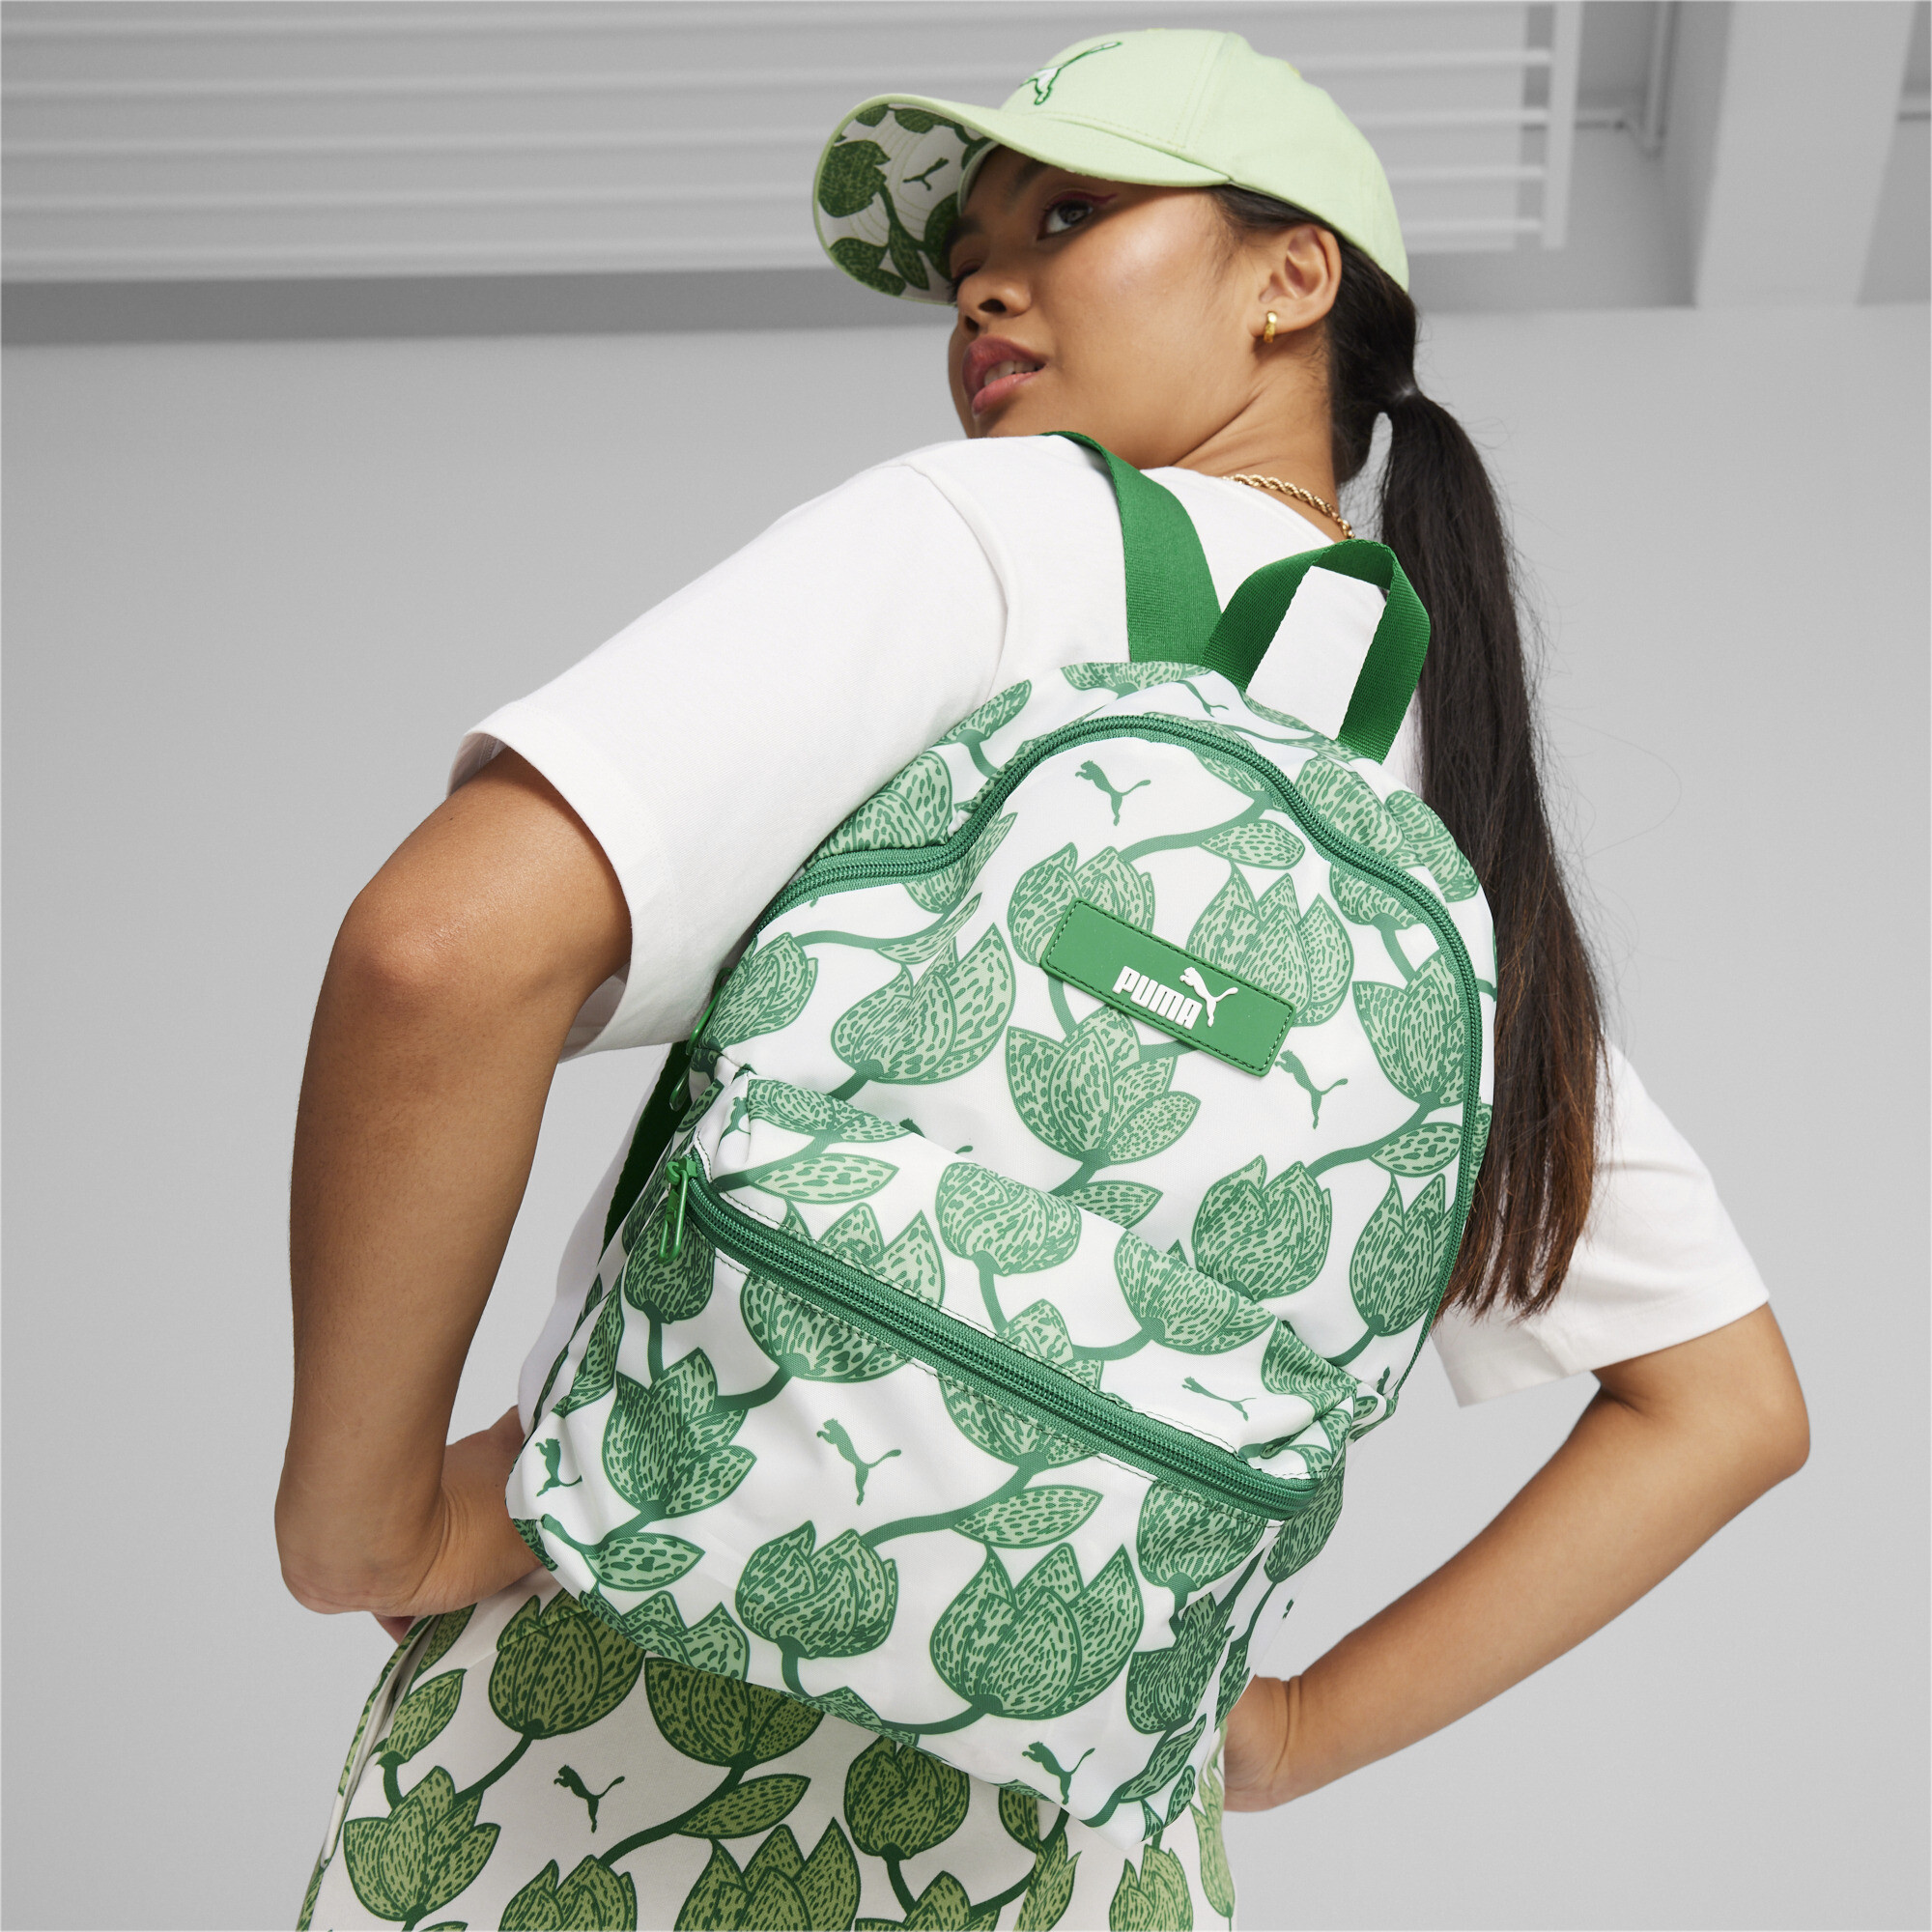 Women's PUMA Core Pop Backpack In Green